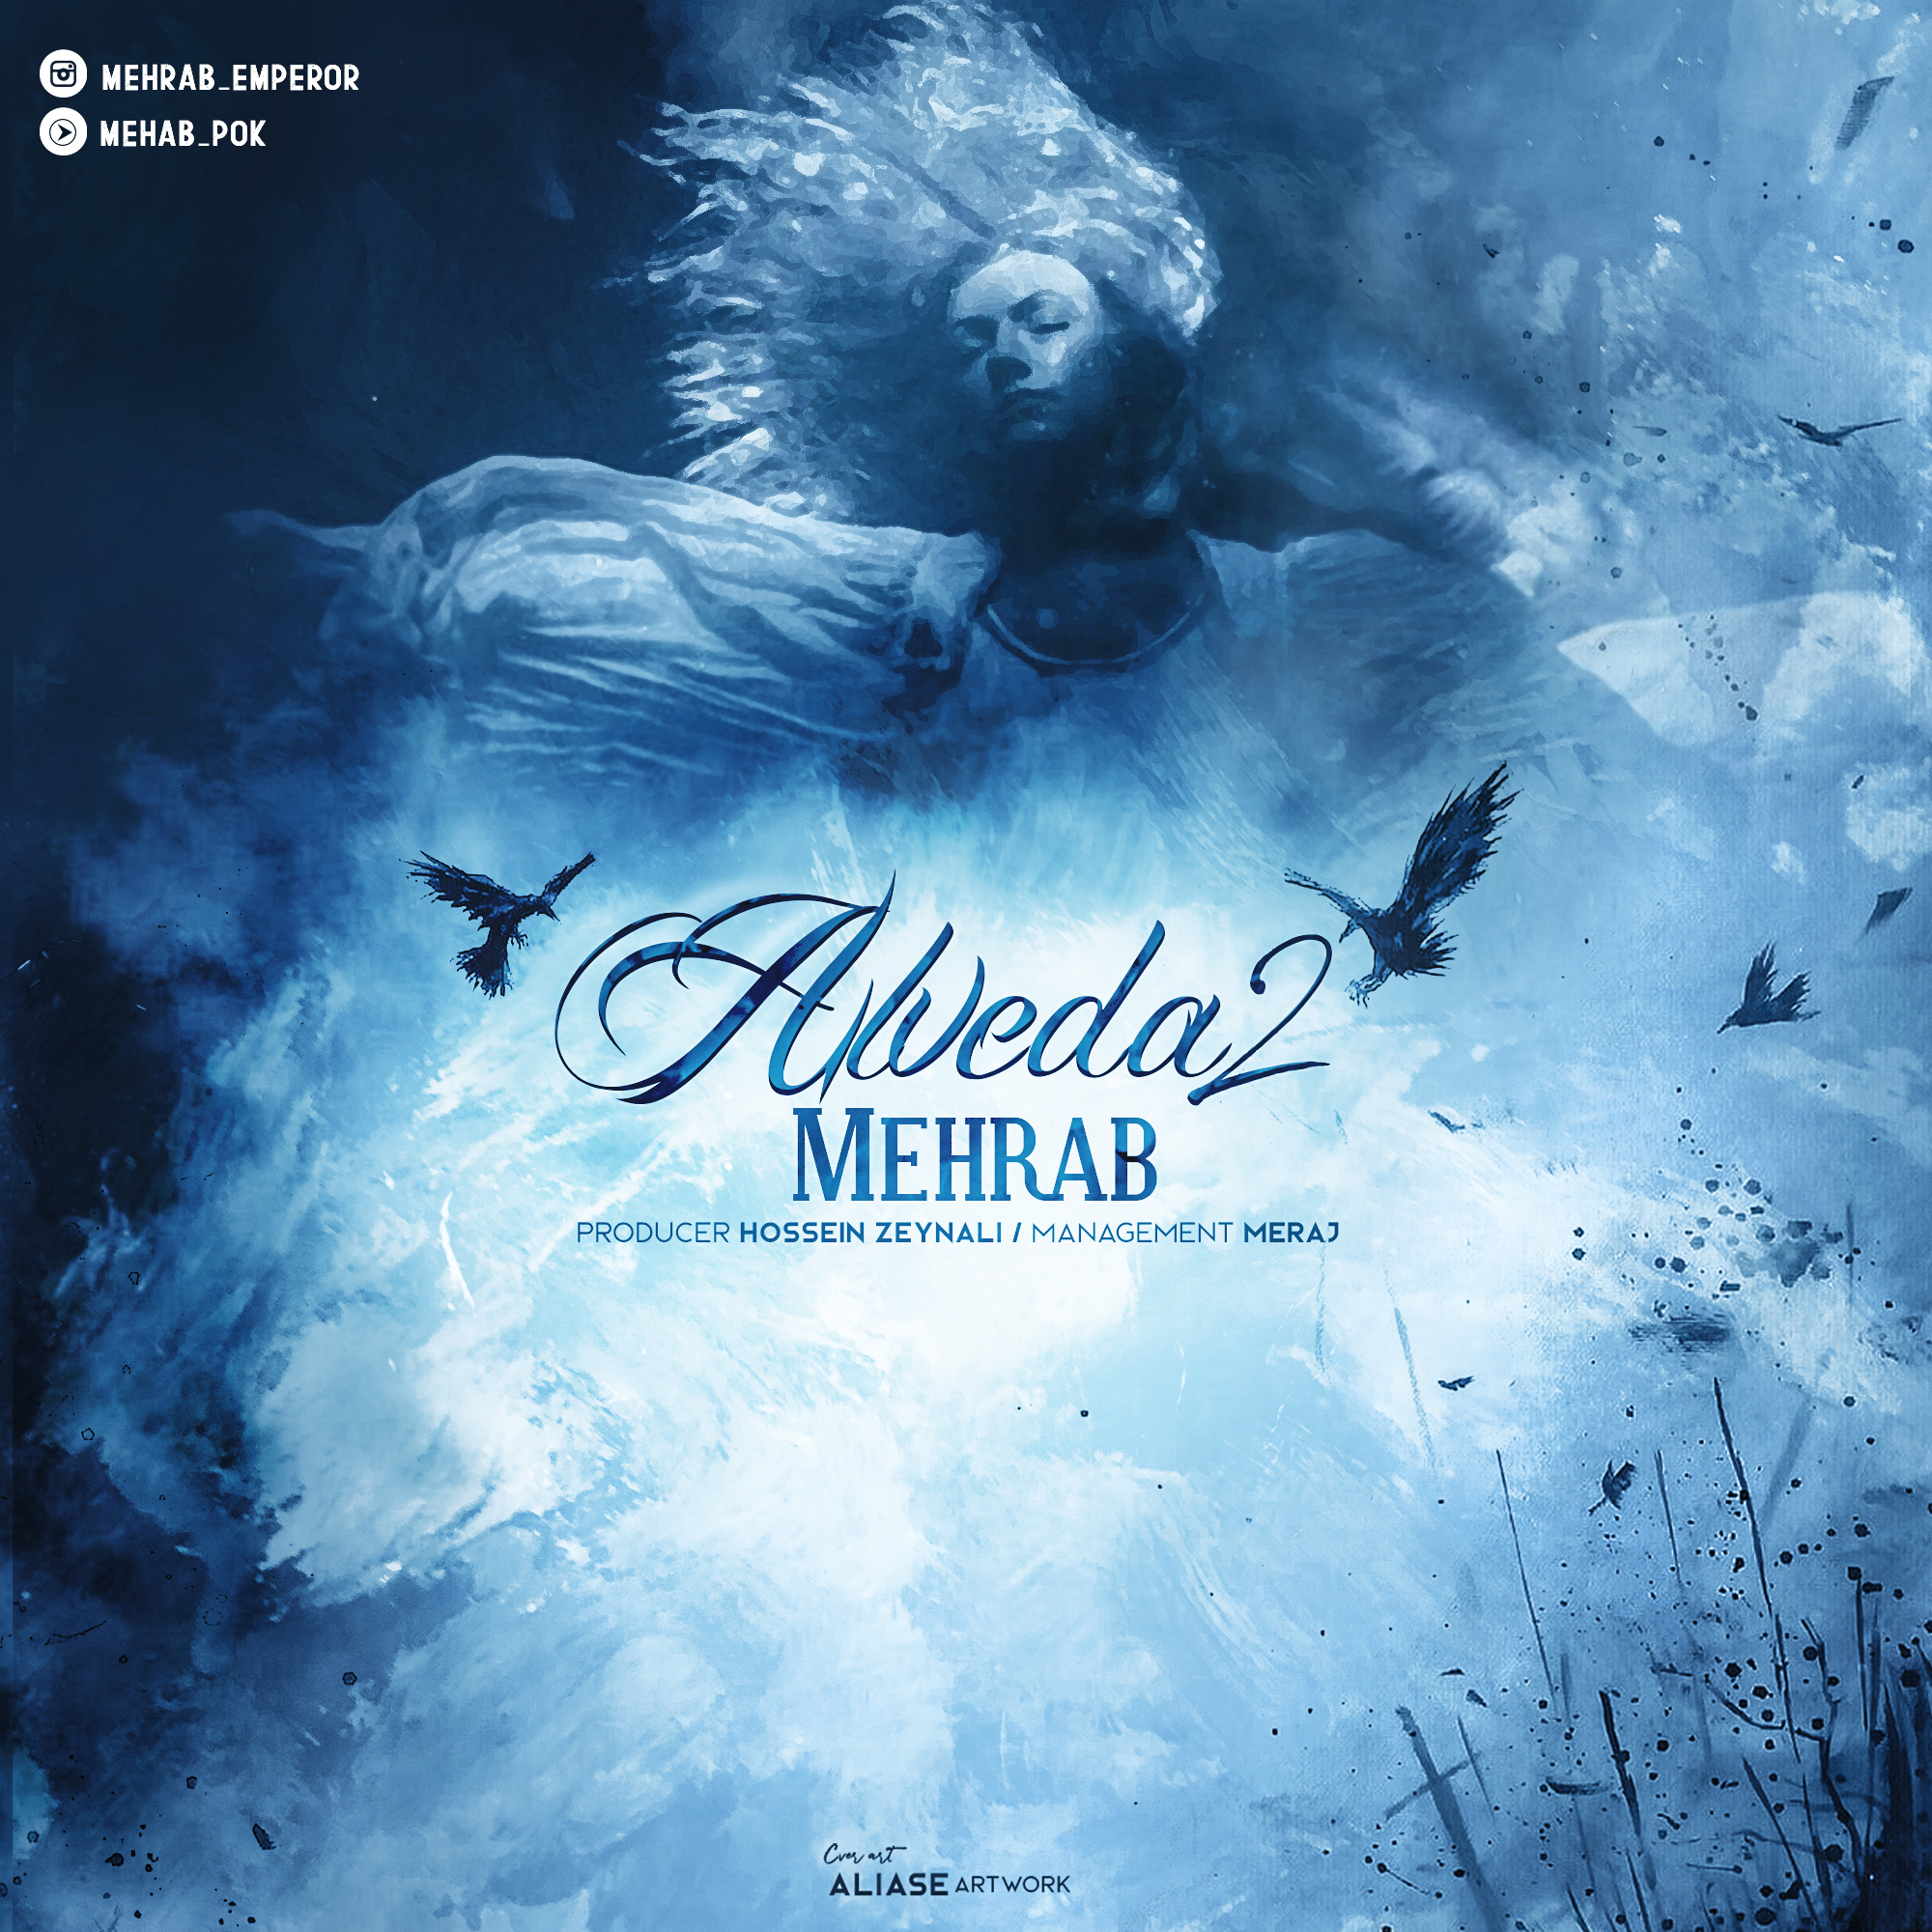  دانلود آهنگ جدید مهراب - الوداع ۲ | Download New Music By Mehrab - Alveda 2